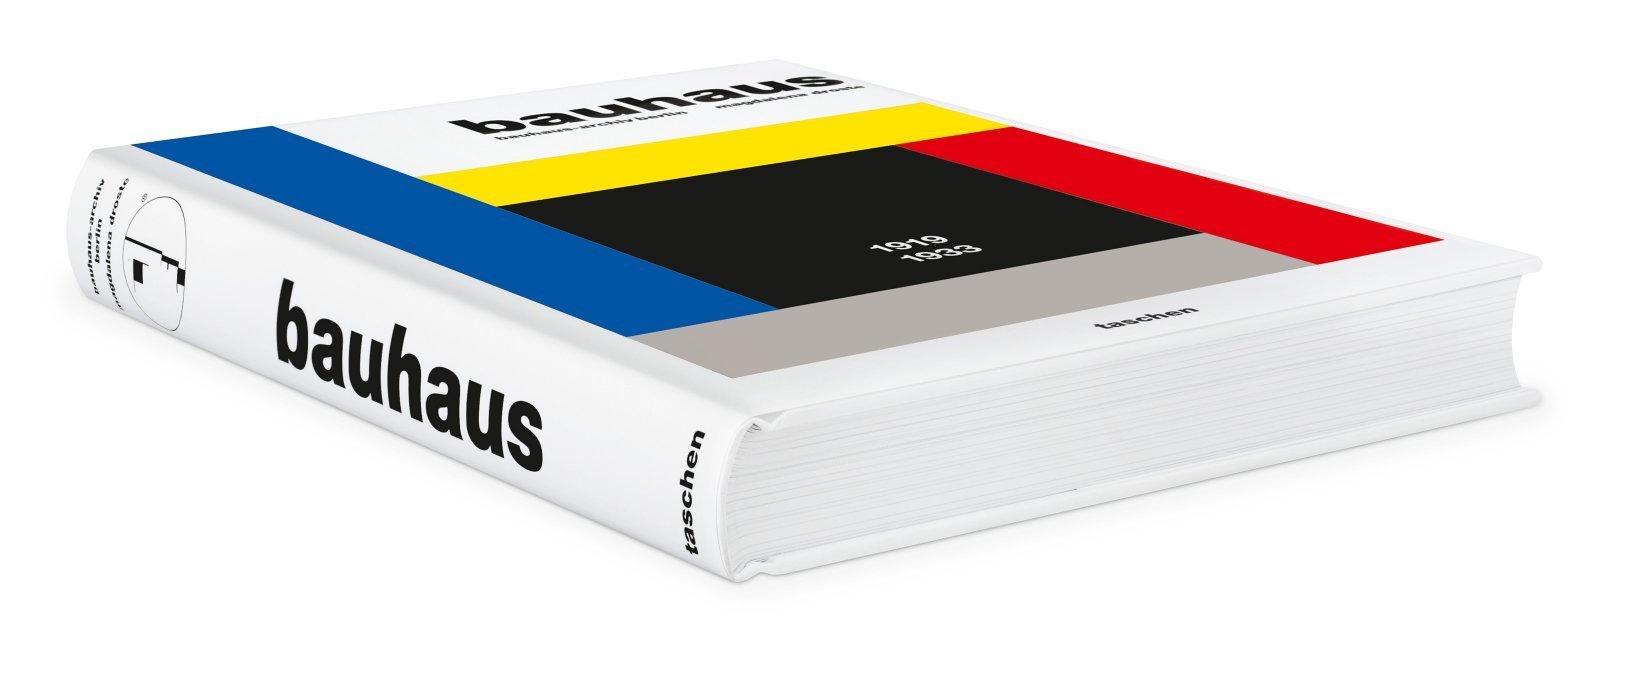 Taschen Verlag Bauhaus XL